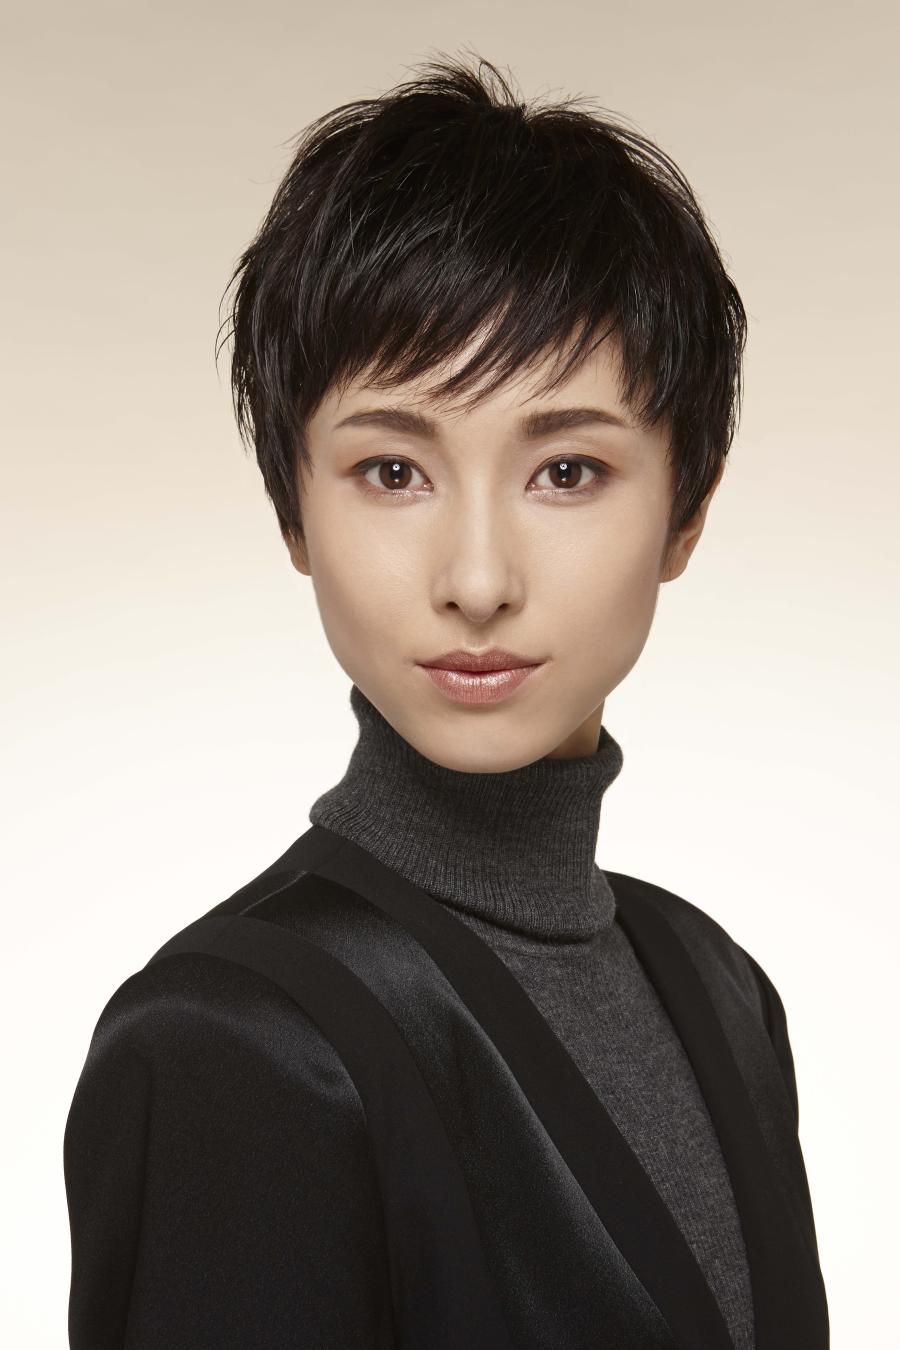 日本女性の化粧の変遷100年 資生堂ヘアメイクアップアーティスト